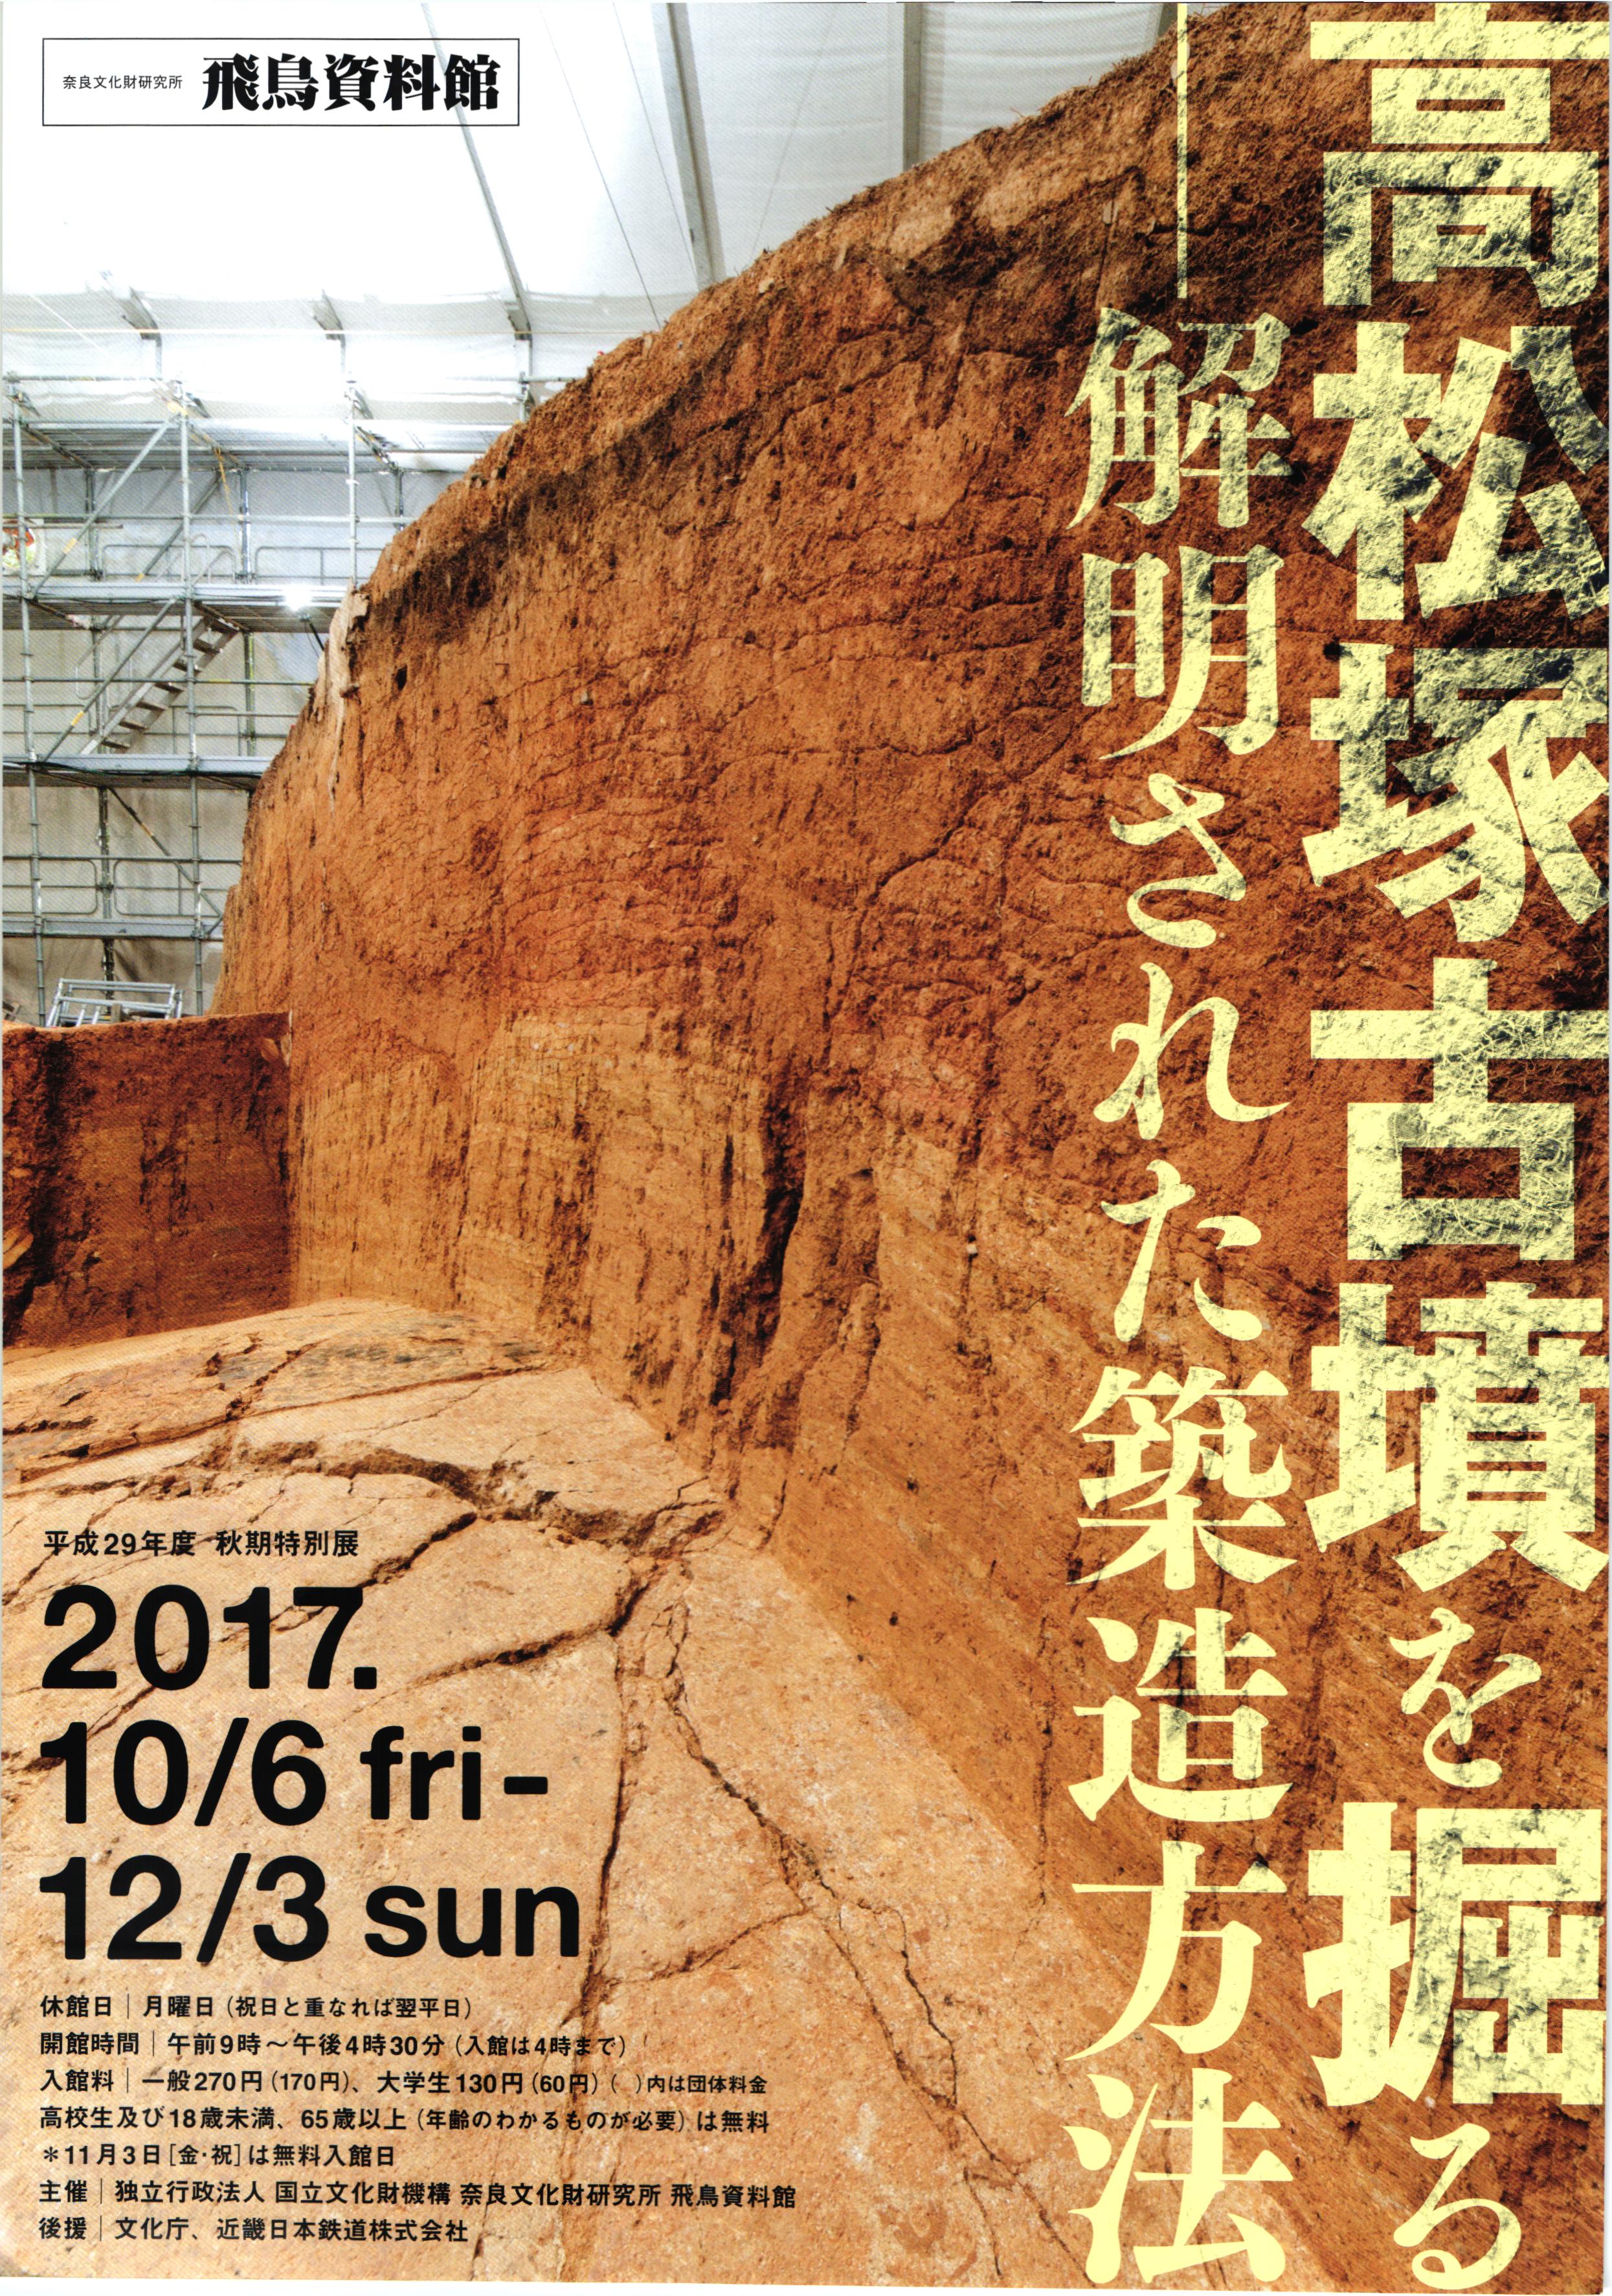 秋期特別展「高松塚古墳を掘る -解明された築造方法- 」